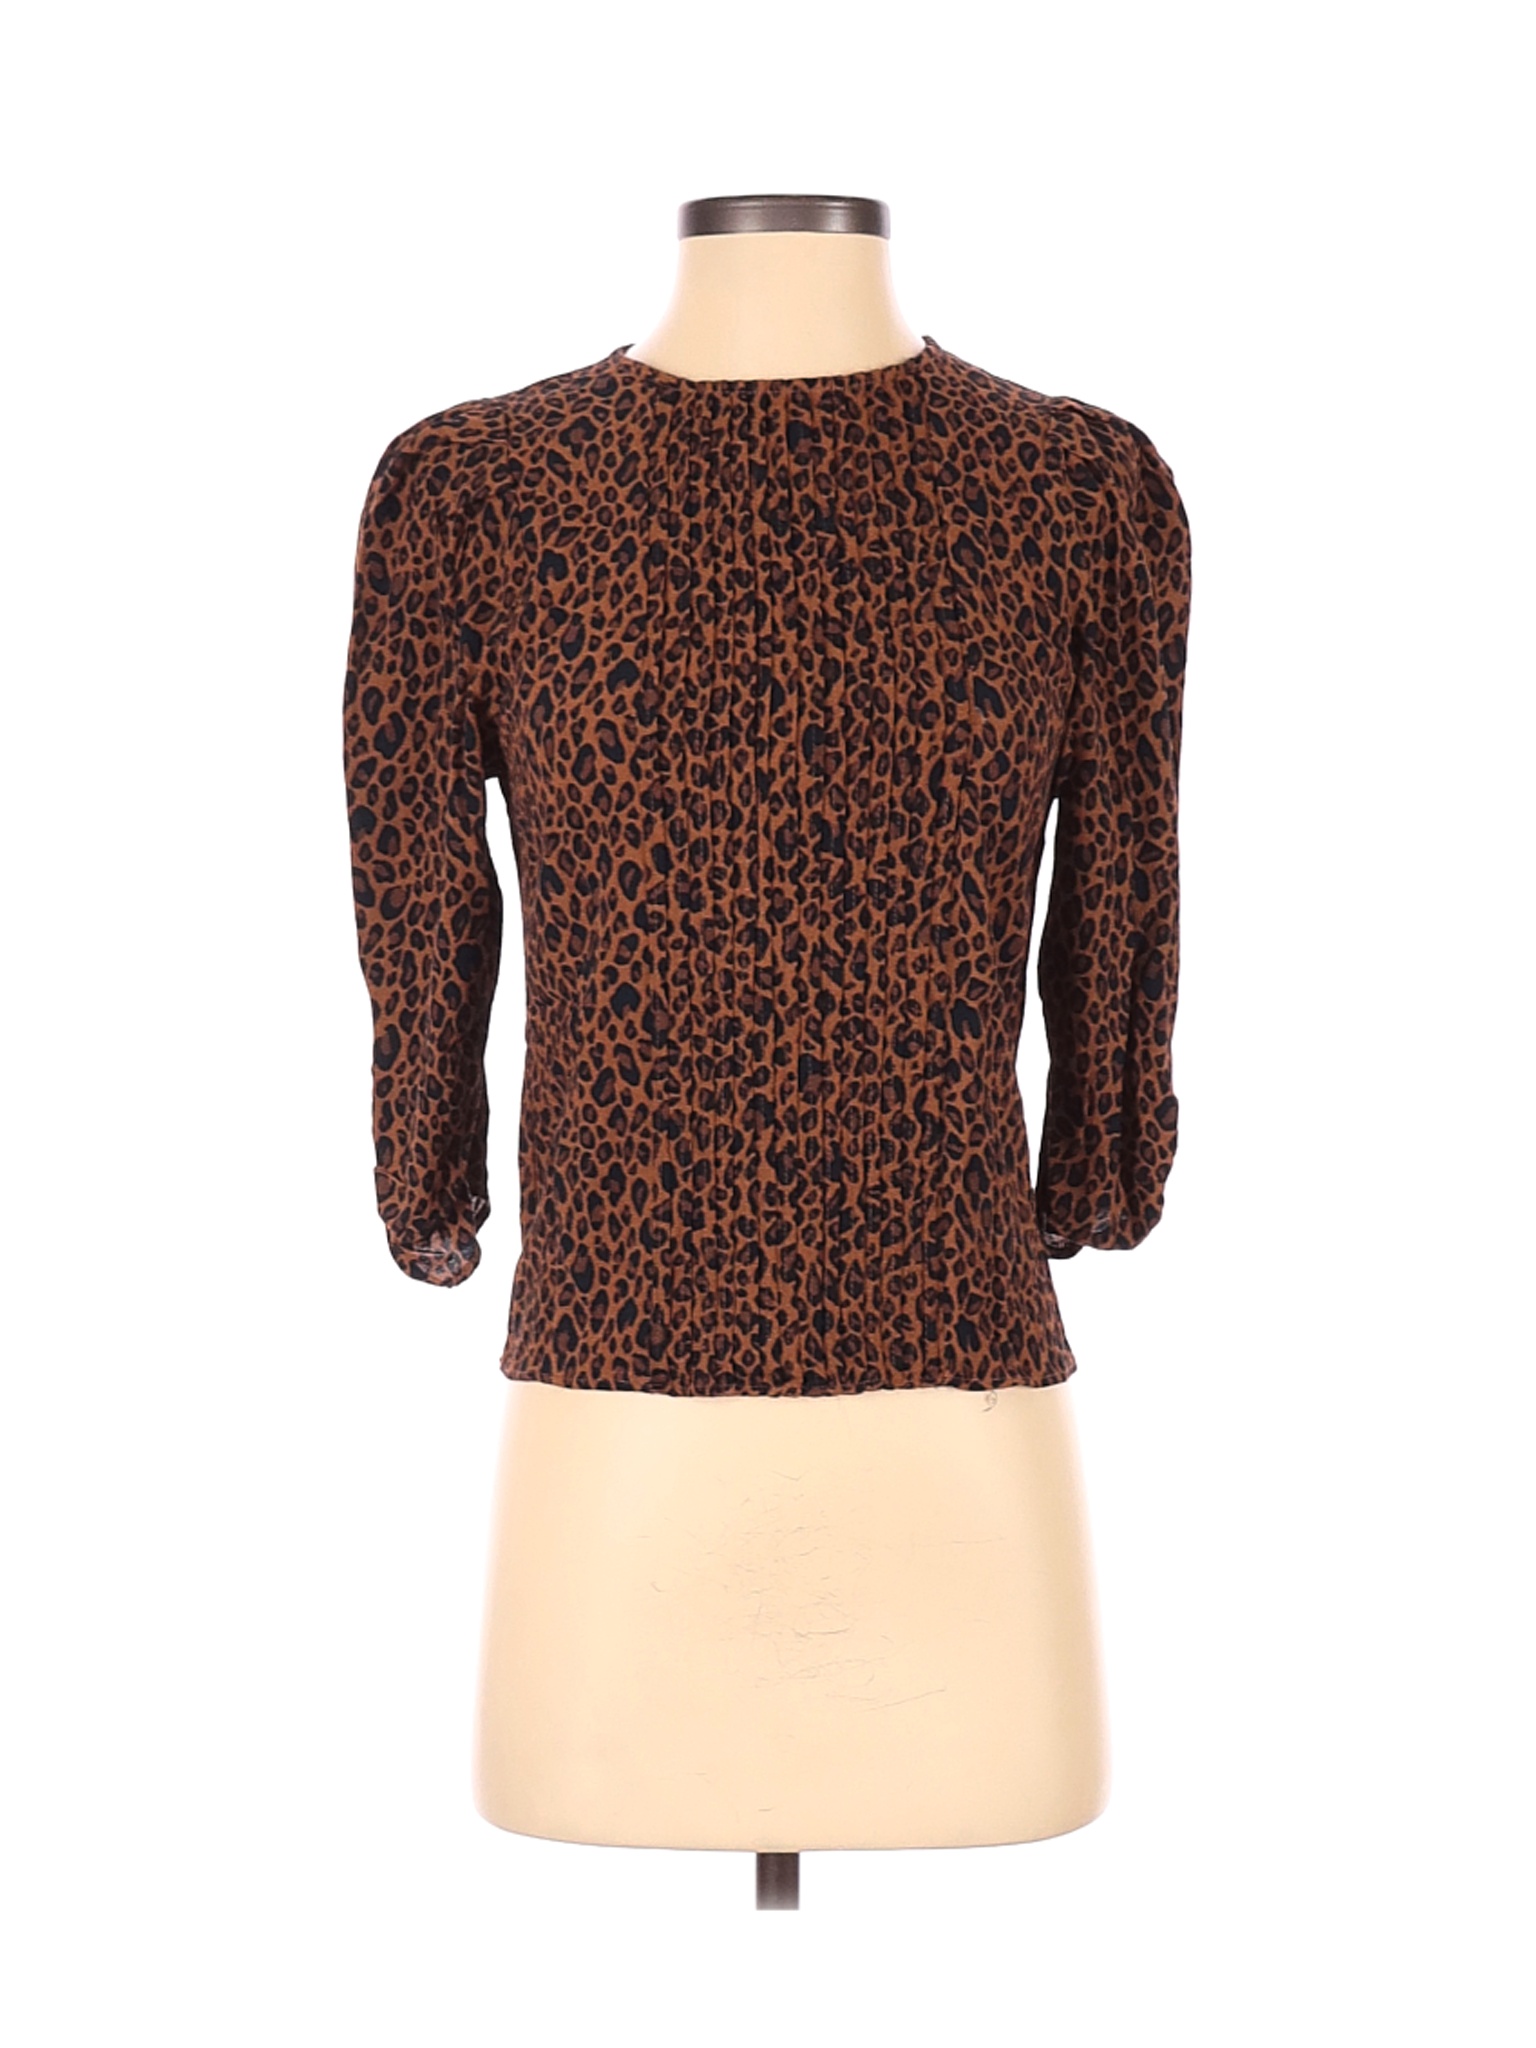 Zara Women Brown 3/4 Sleeve Blouse XS | eBay